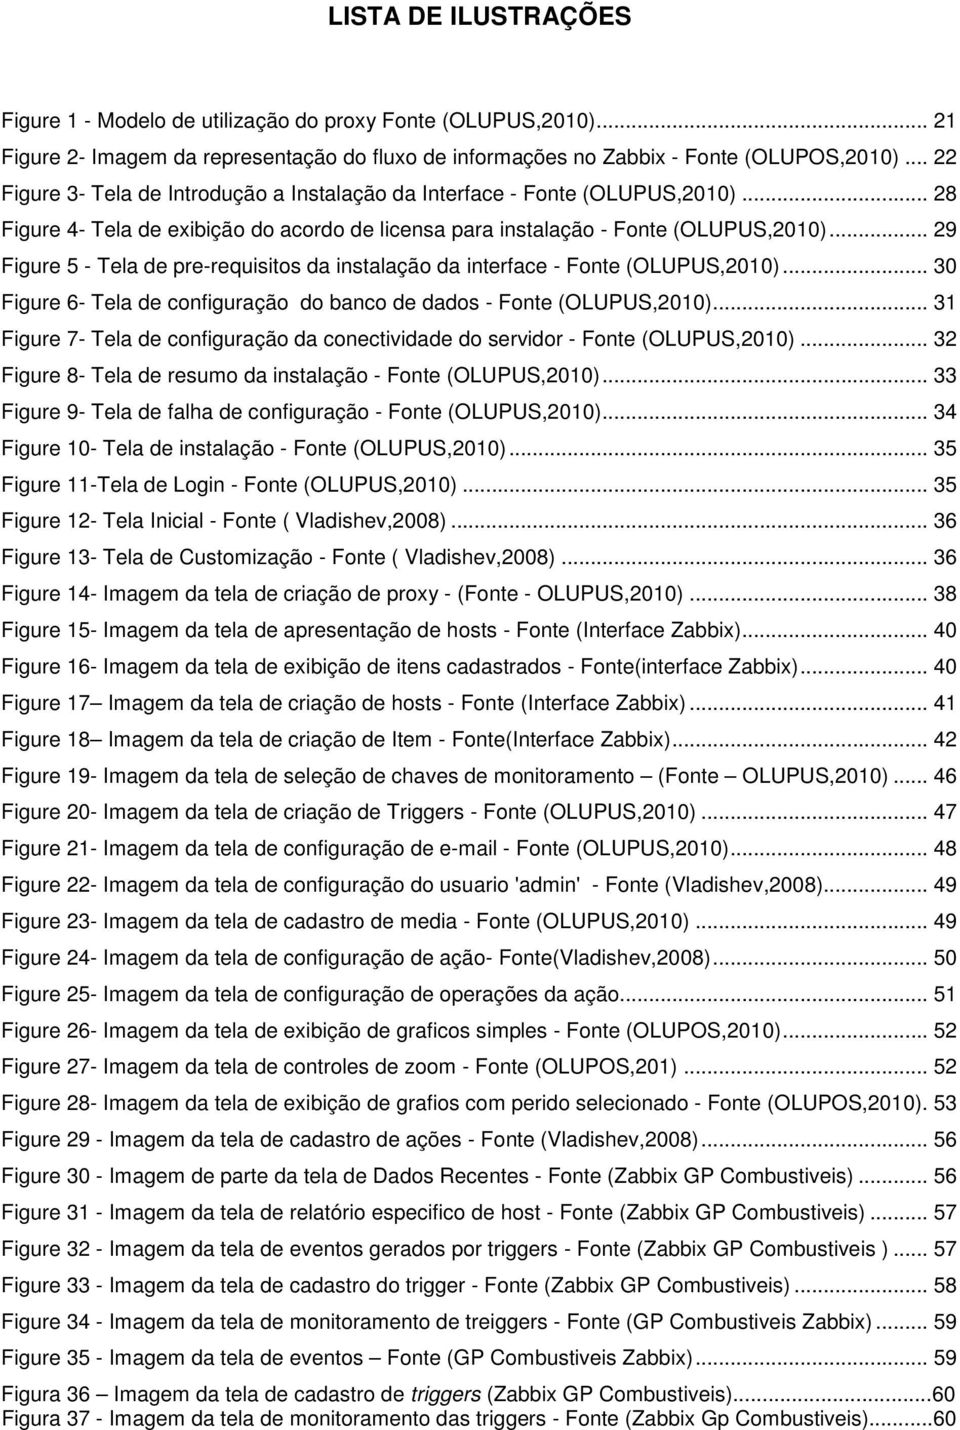 .. 29 Figure 5 - Tela de pre-requisitos da instalação da interface - Fonte (OLUPUS,2010)... 30 Figure 6- Tela de configuração do banco de dados - Fonte (OLUPUS,2010).